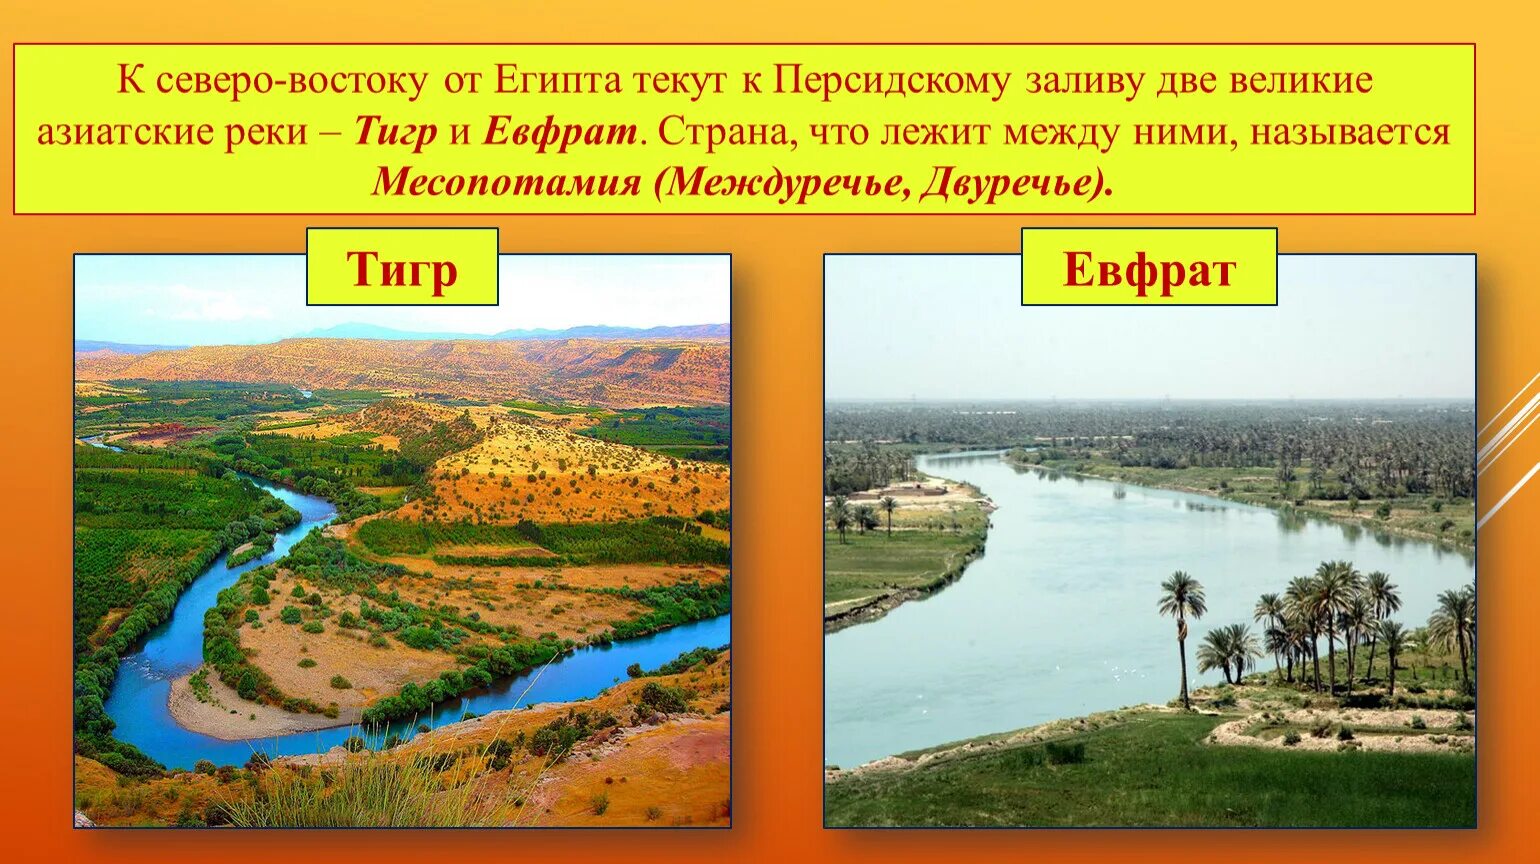 В какой стране находятся евфрат. Устье рек тигра и Евфрата. Река тигр Месопотамия. Реки Месопотамии Ефрат.